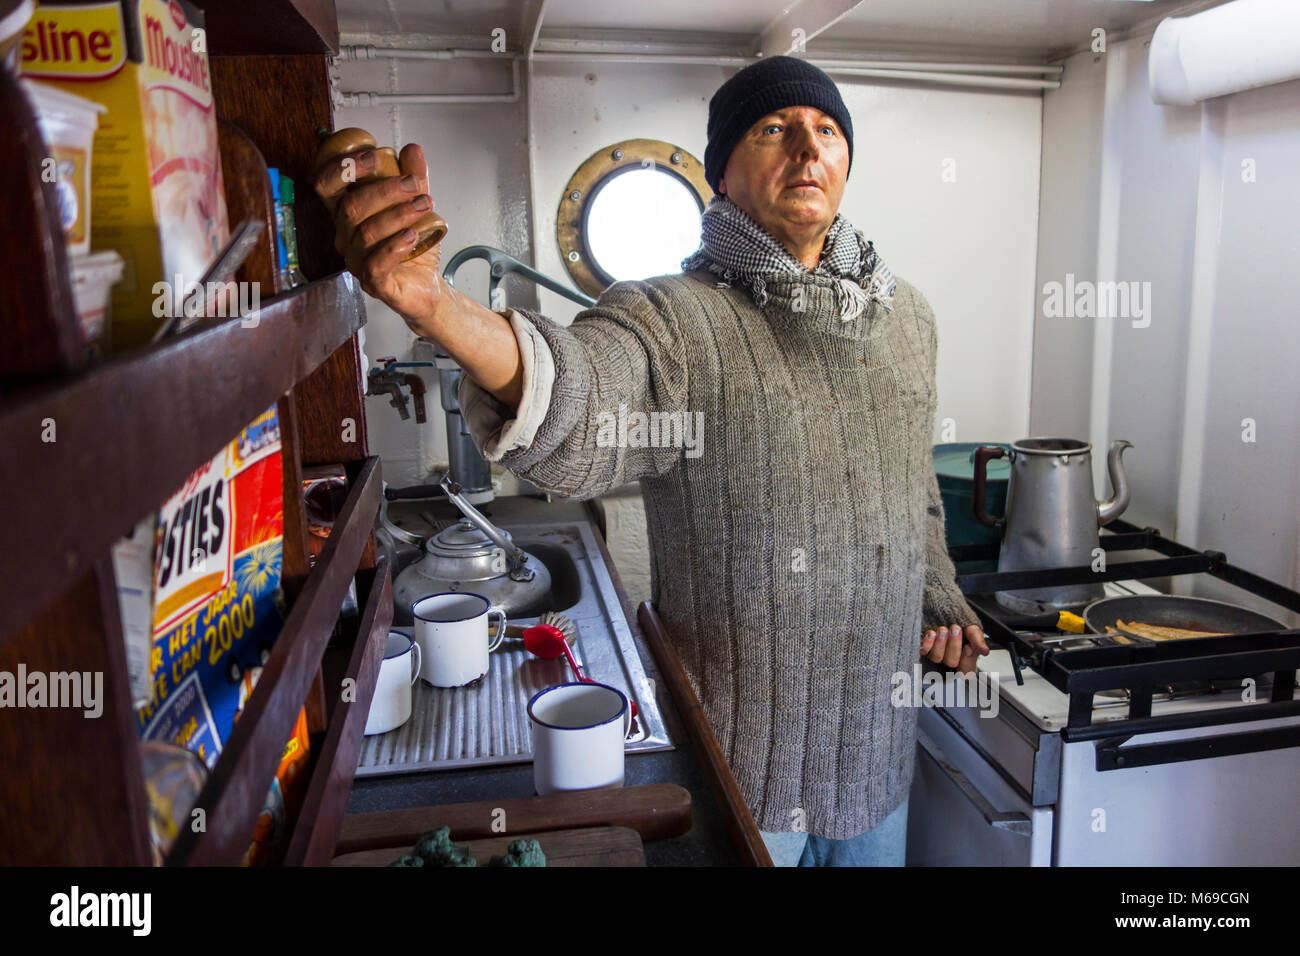 Petit-déjeuner de cuisson membre de l'équipage dans la cuisine du dernier chalutier Islande Amandine, bateau de pêche musée rénové maintenant à Ostende, Belgique Banque D'Images